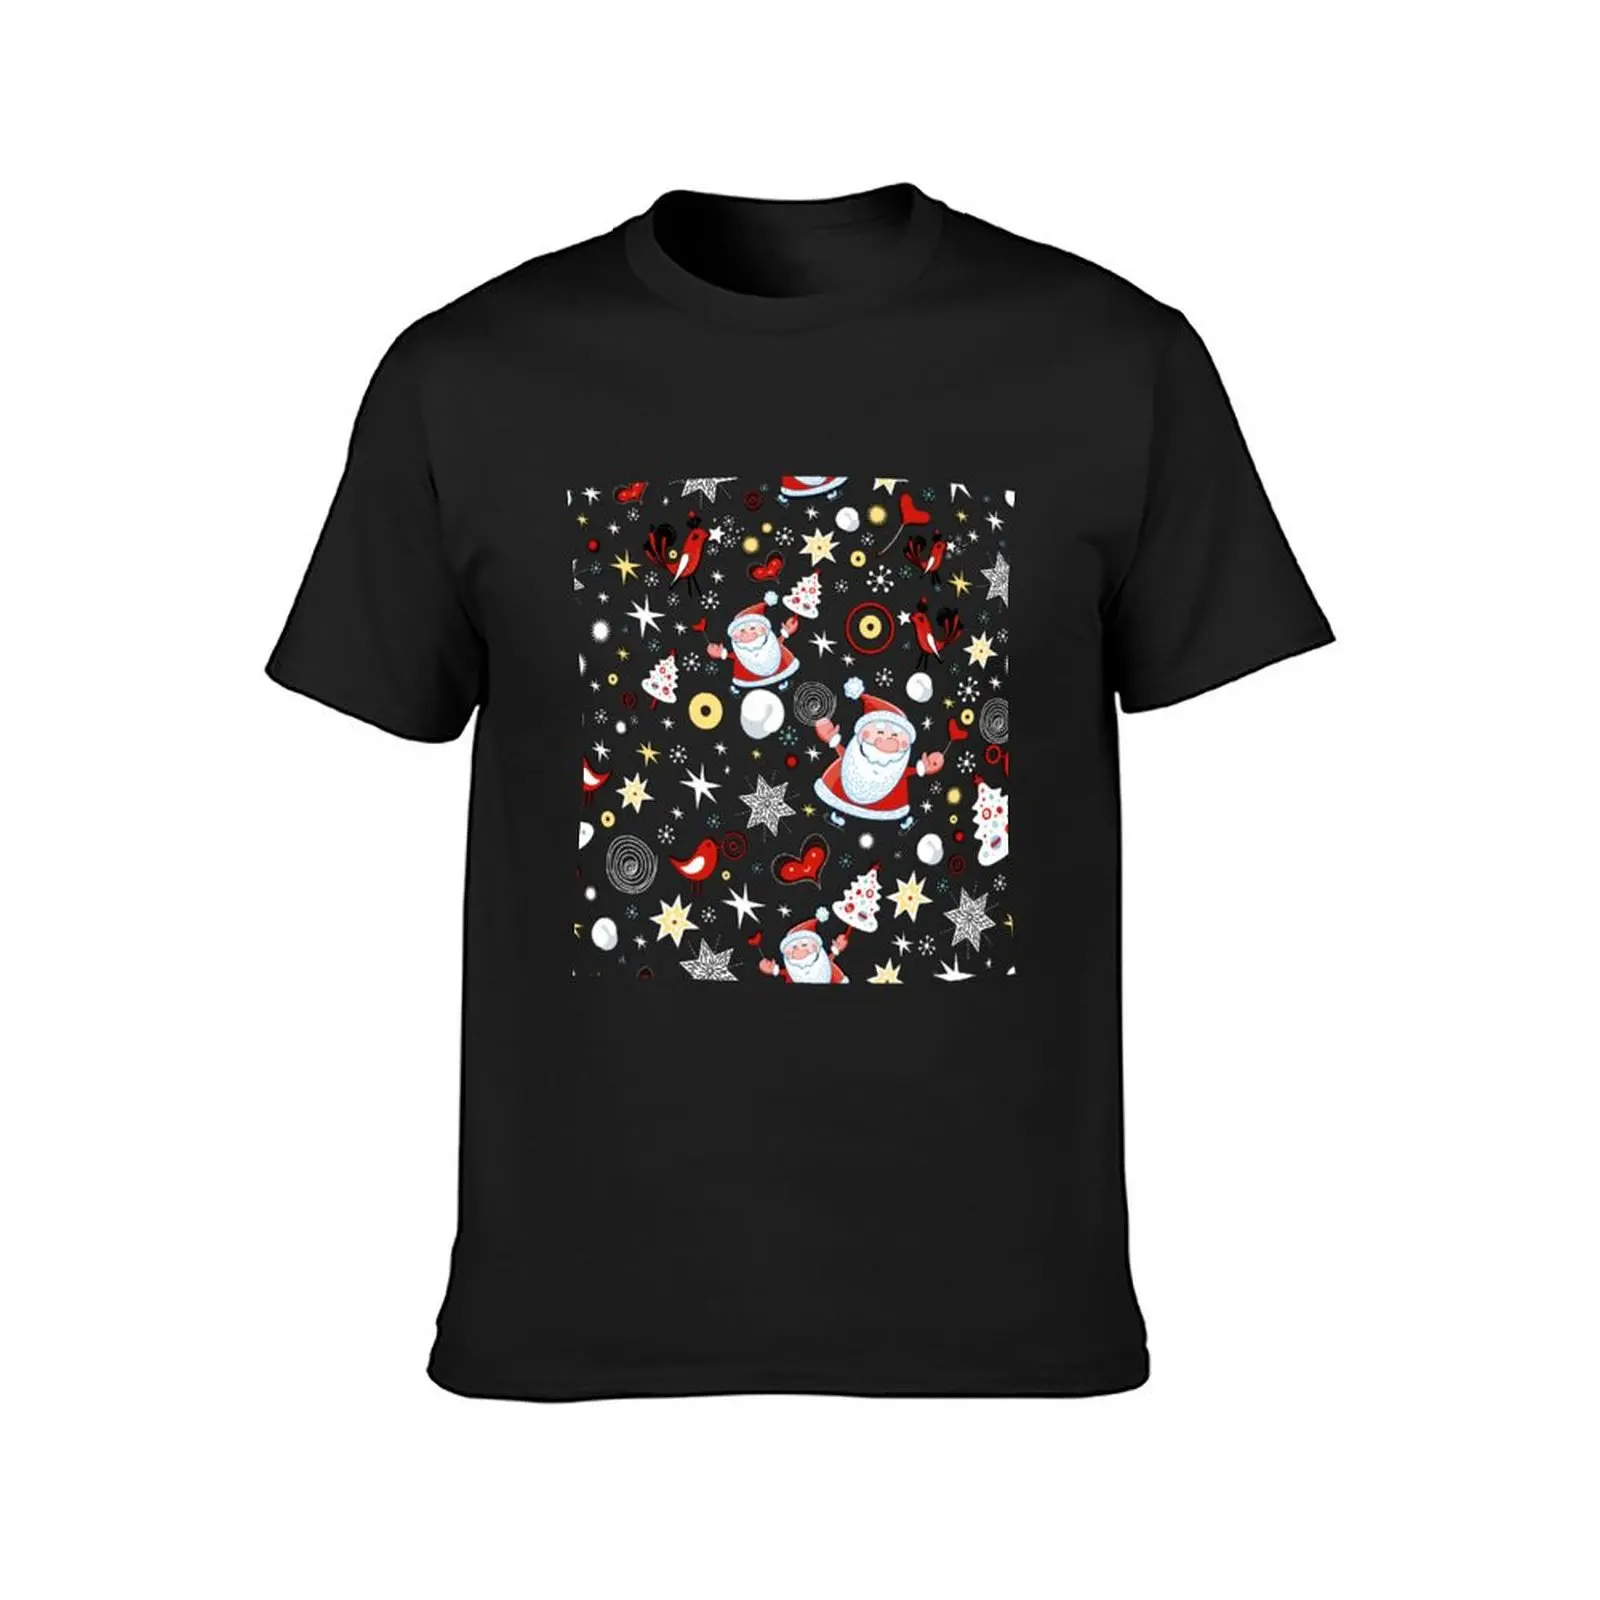 メンズヴィンテージアニメTシャツ,クリスマスデザイン,動物柄,カスタマイズ可能なサイズ